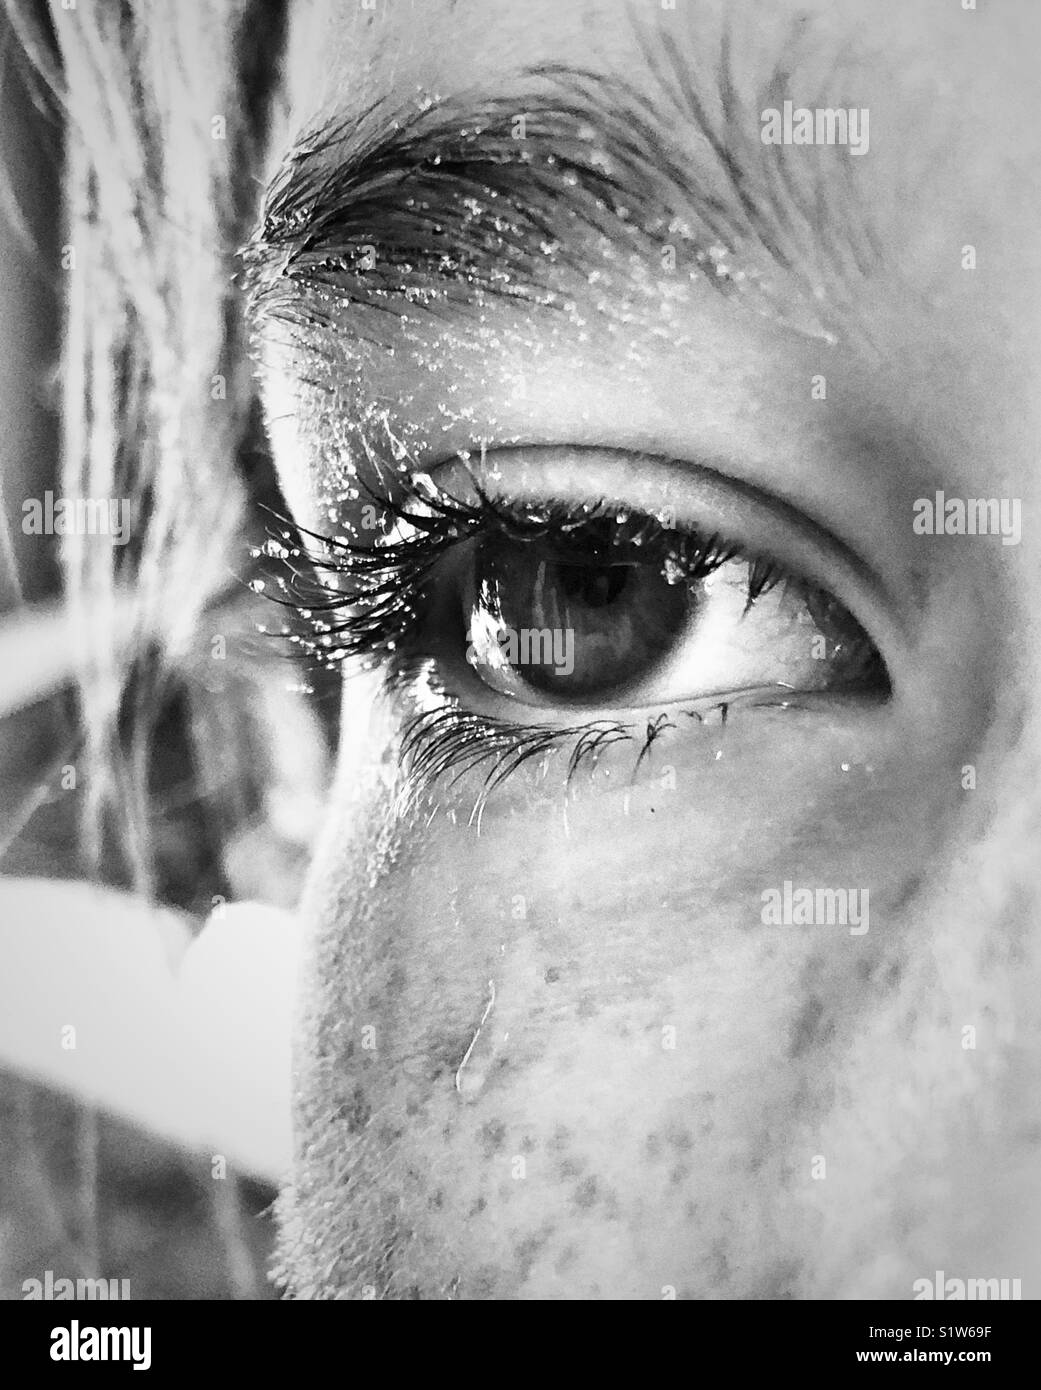 Nahaufnahme des Girl's Auge und teilweise Gesicht in Wassertropfen, wie Schweiß oder Tränen aussehen Stockfoto